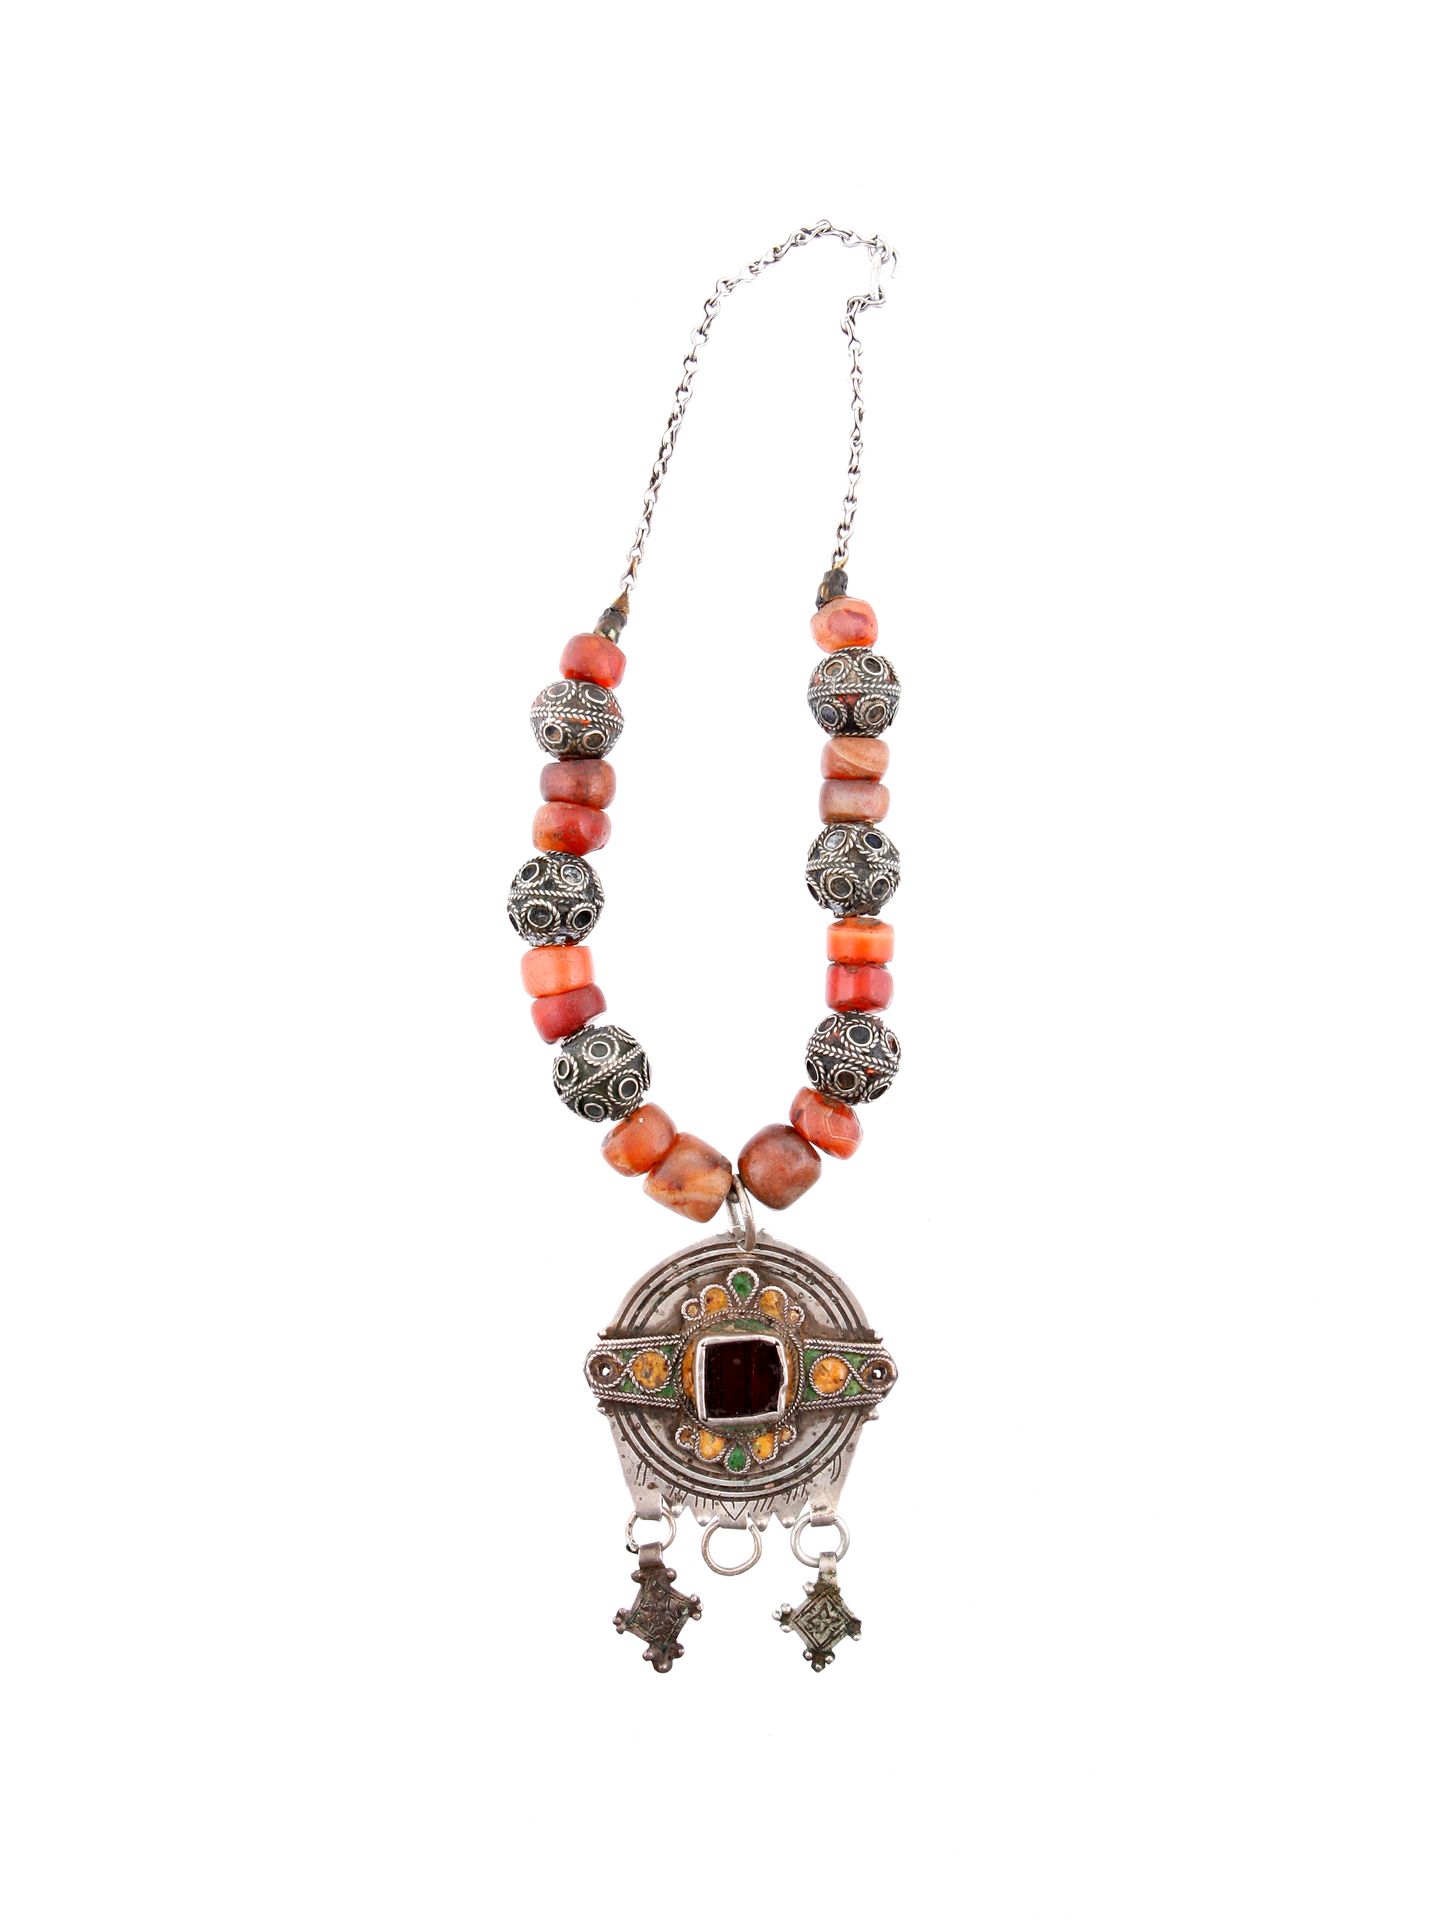 A Berber Necklace with a central Pendant Collana con ciondolo centrale

Berbero,&hellip;